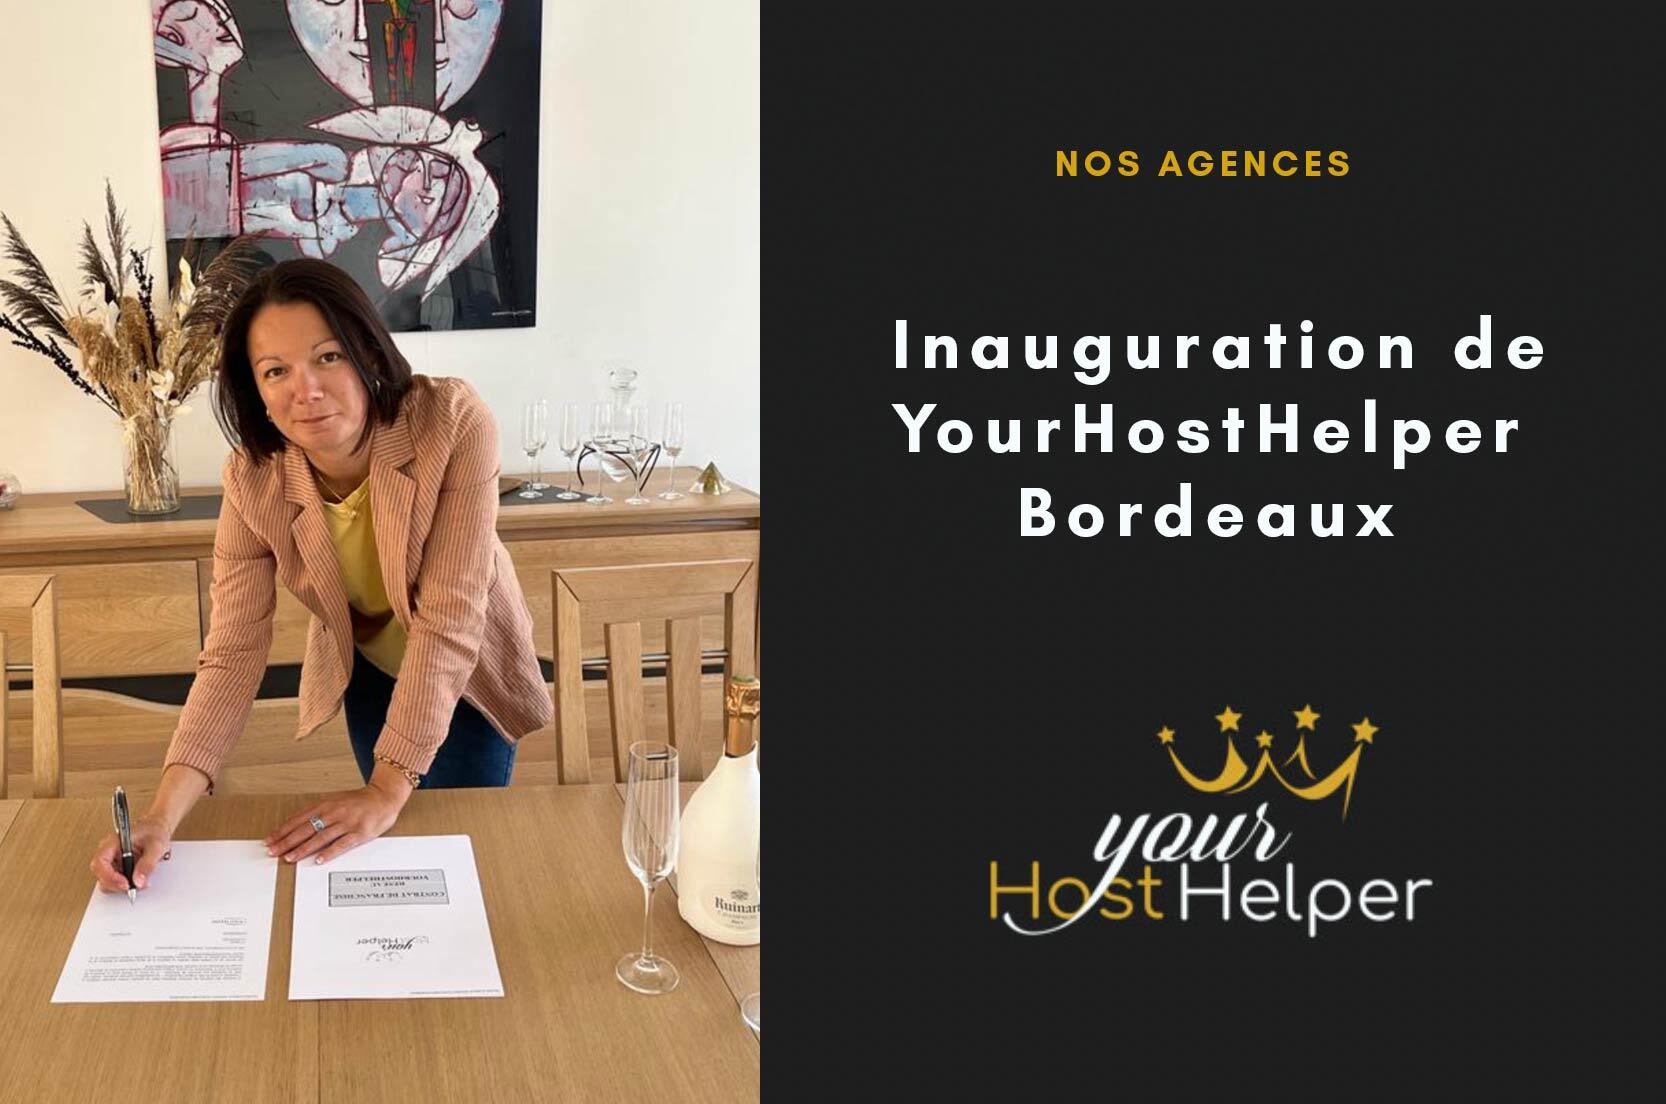 Stai visualizzando la tua nuova agenzia di concierge Airbnb YourHostHelper a Bordeaux